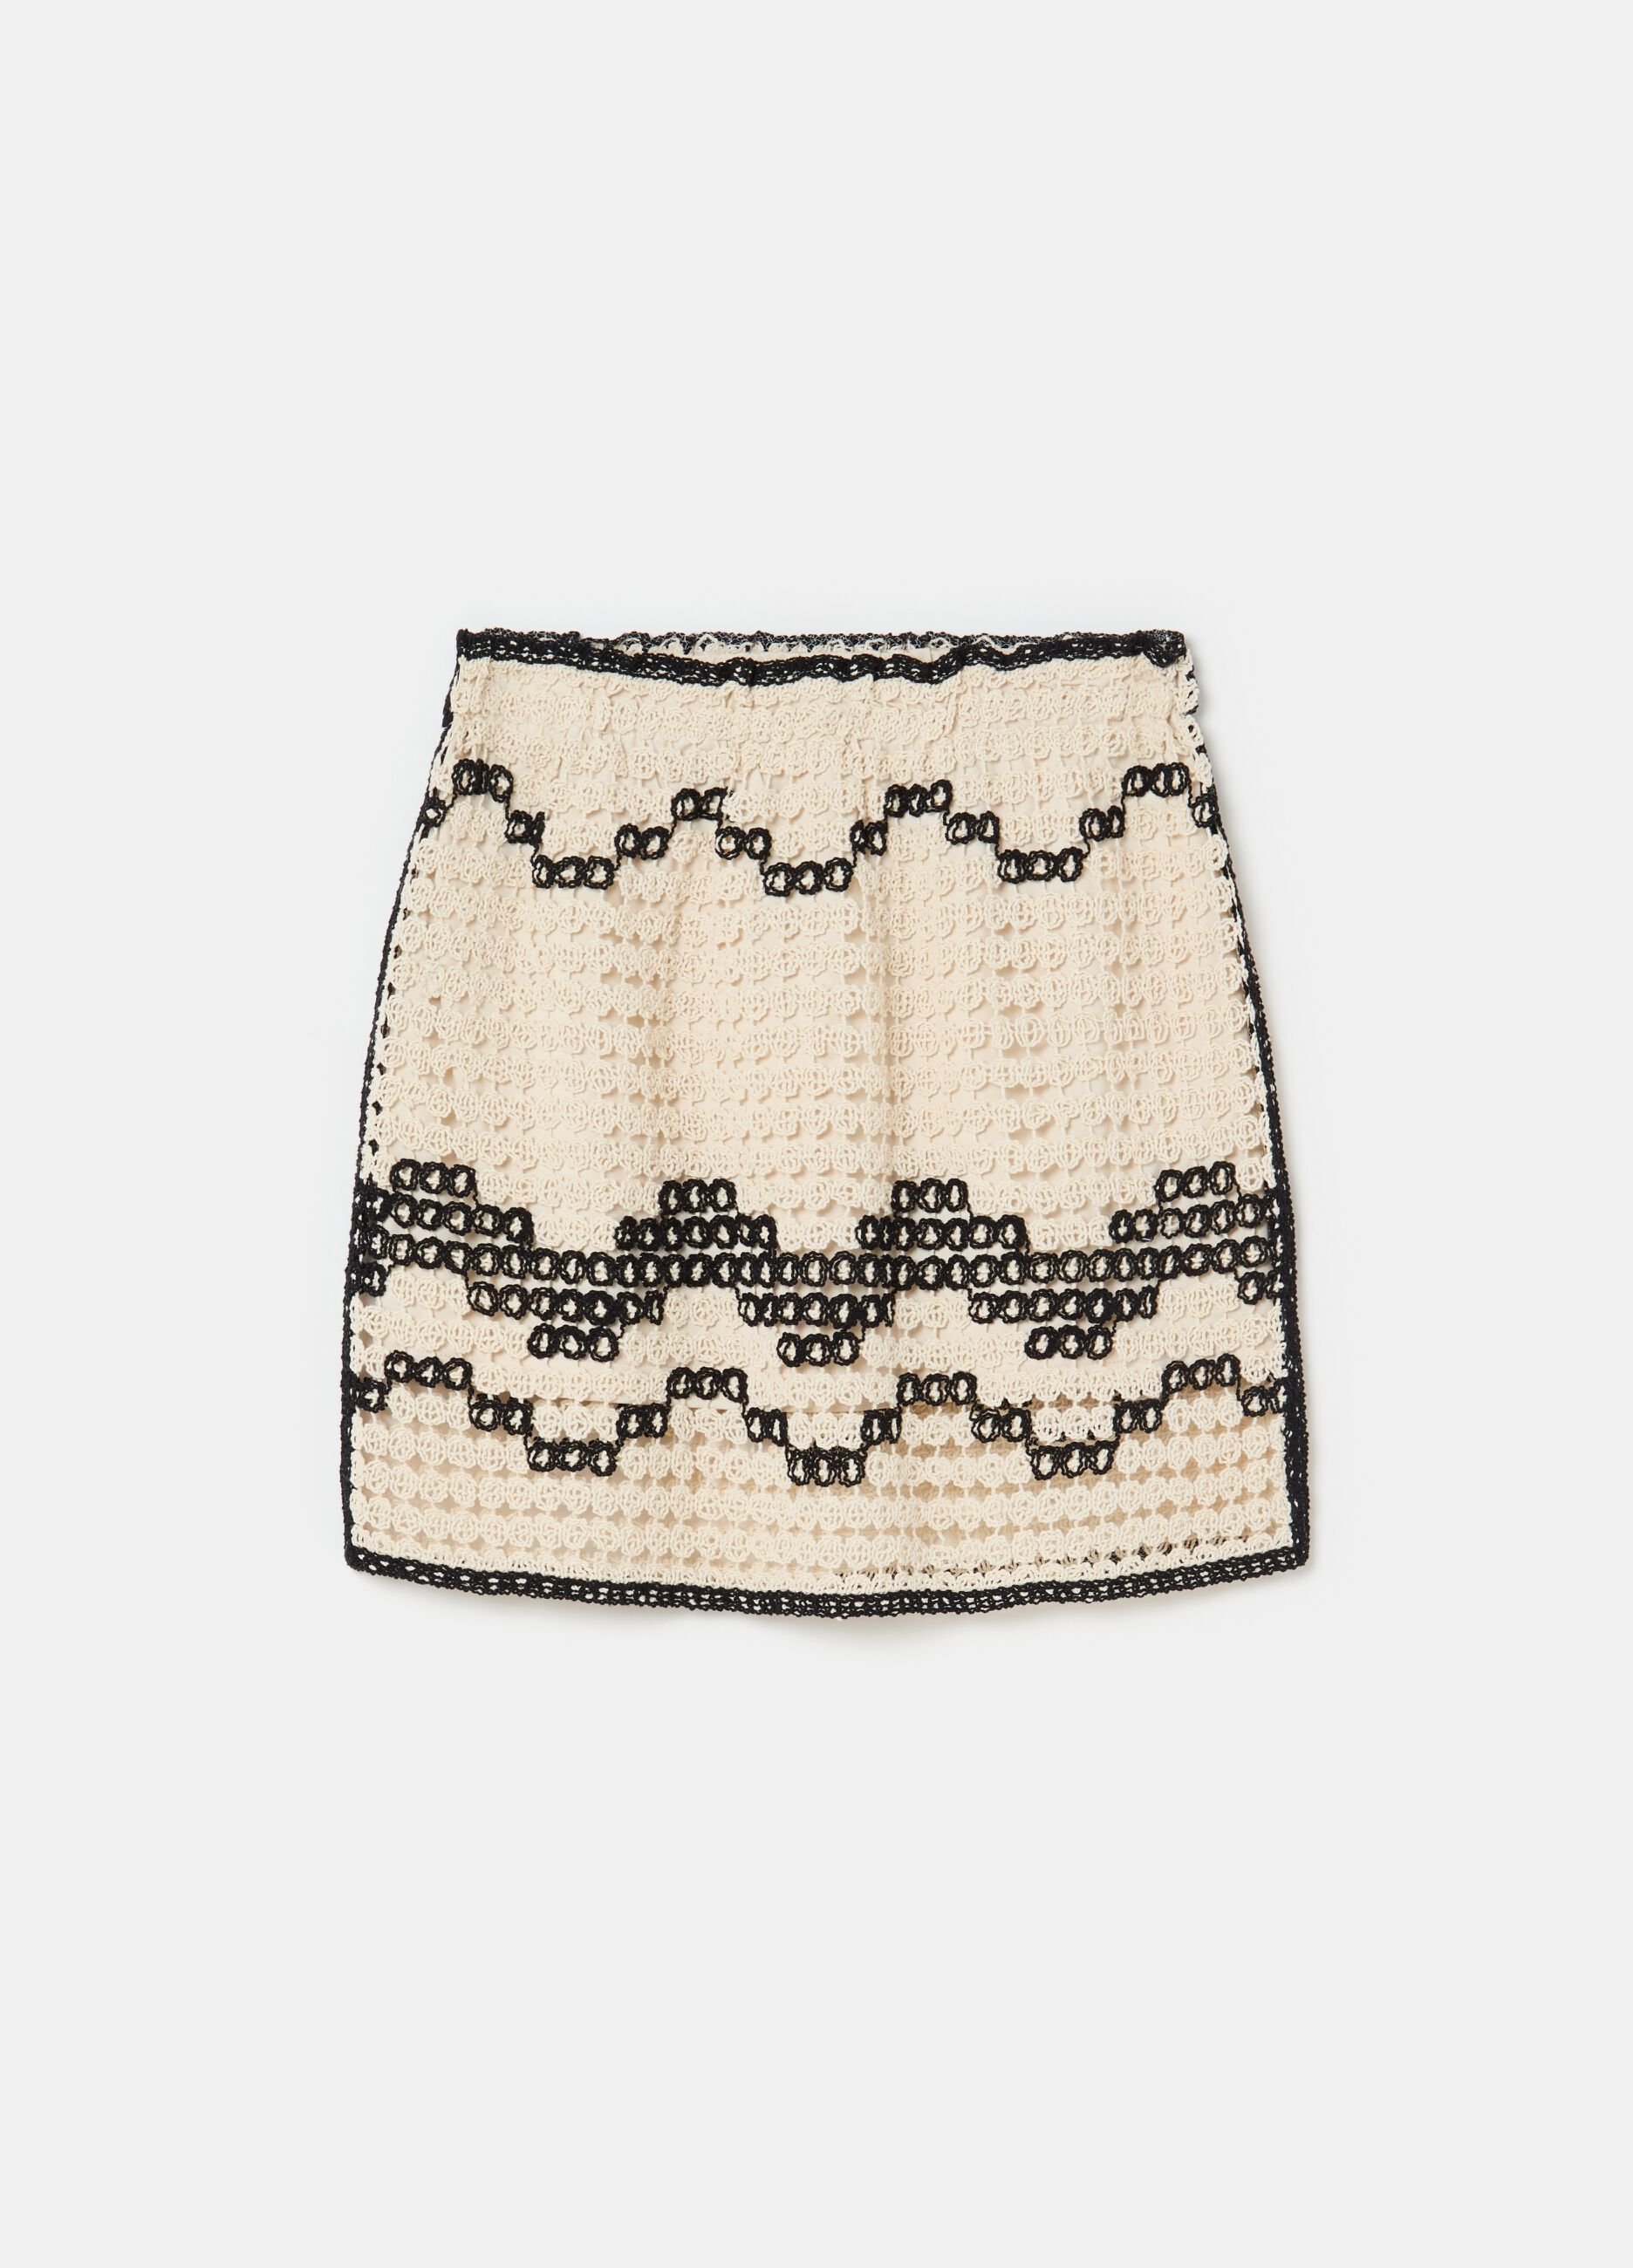 Crochet miniskirt with wavy motif